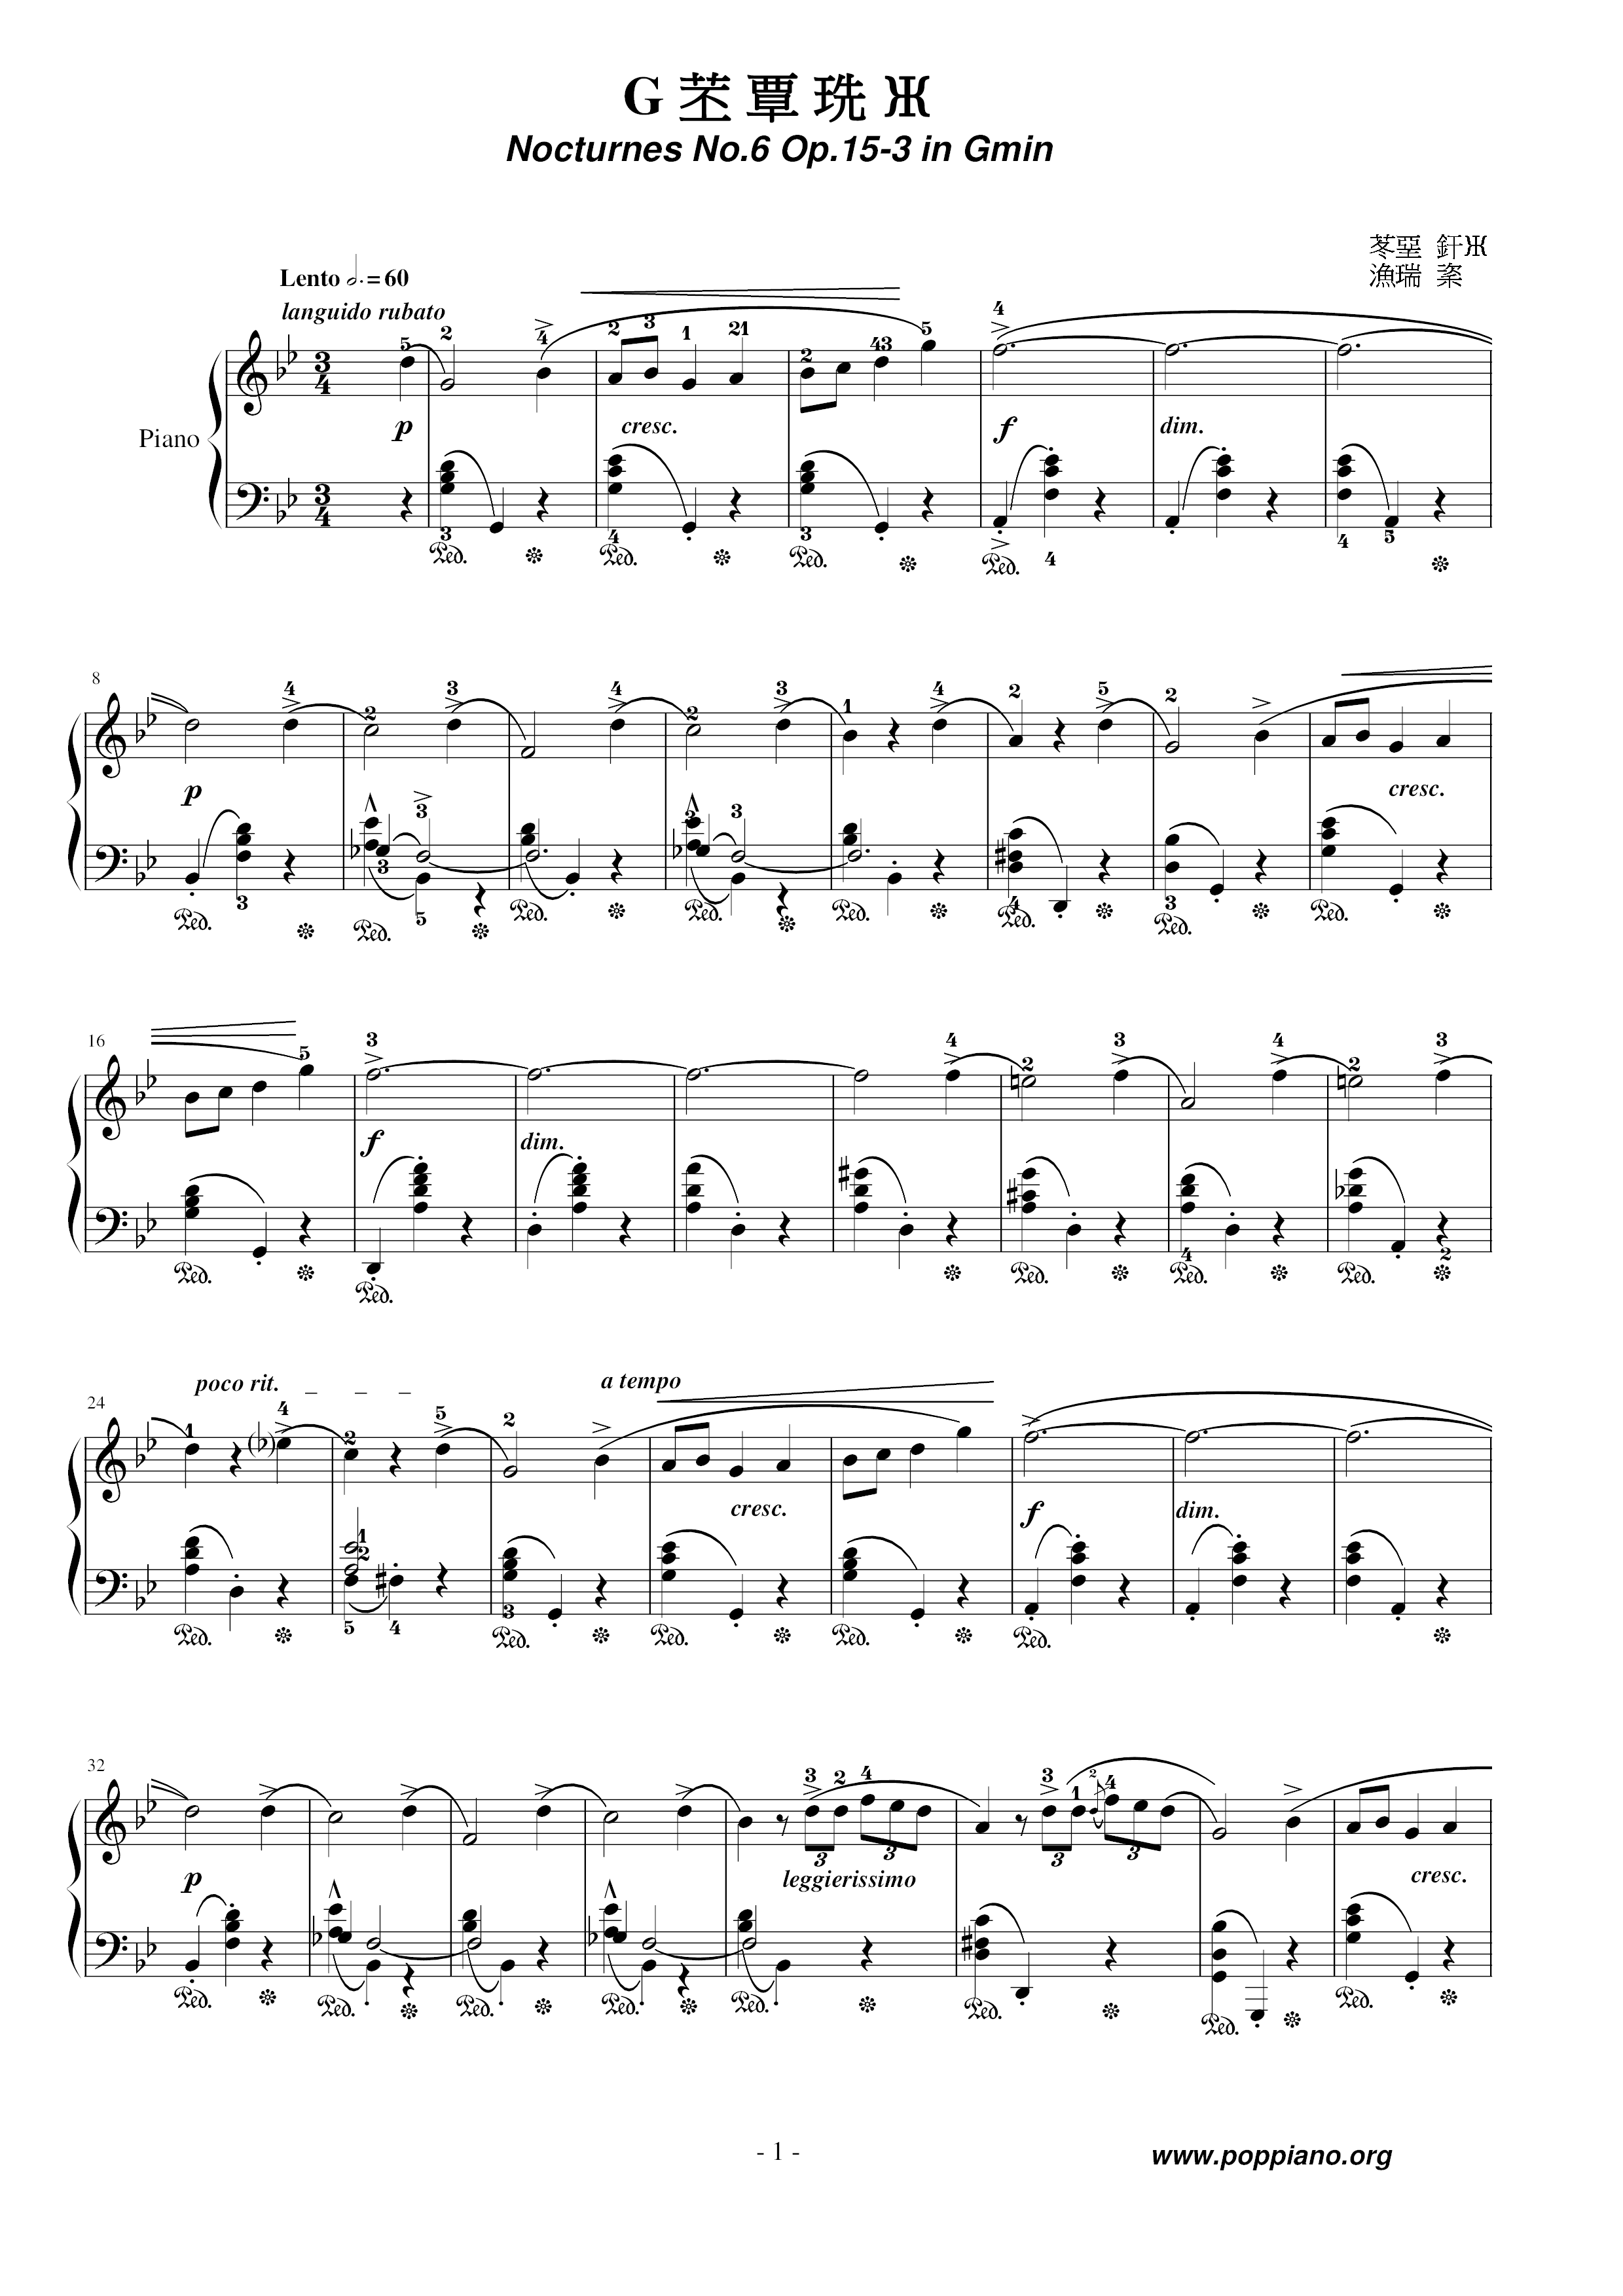 Nocturne No. 06 Score